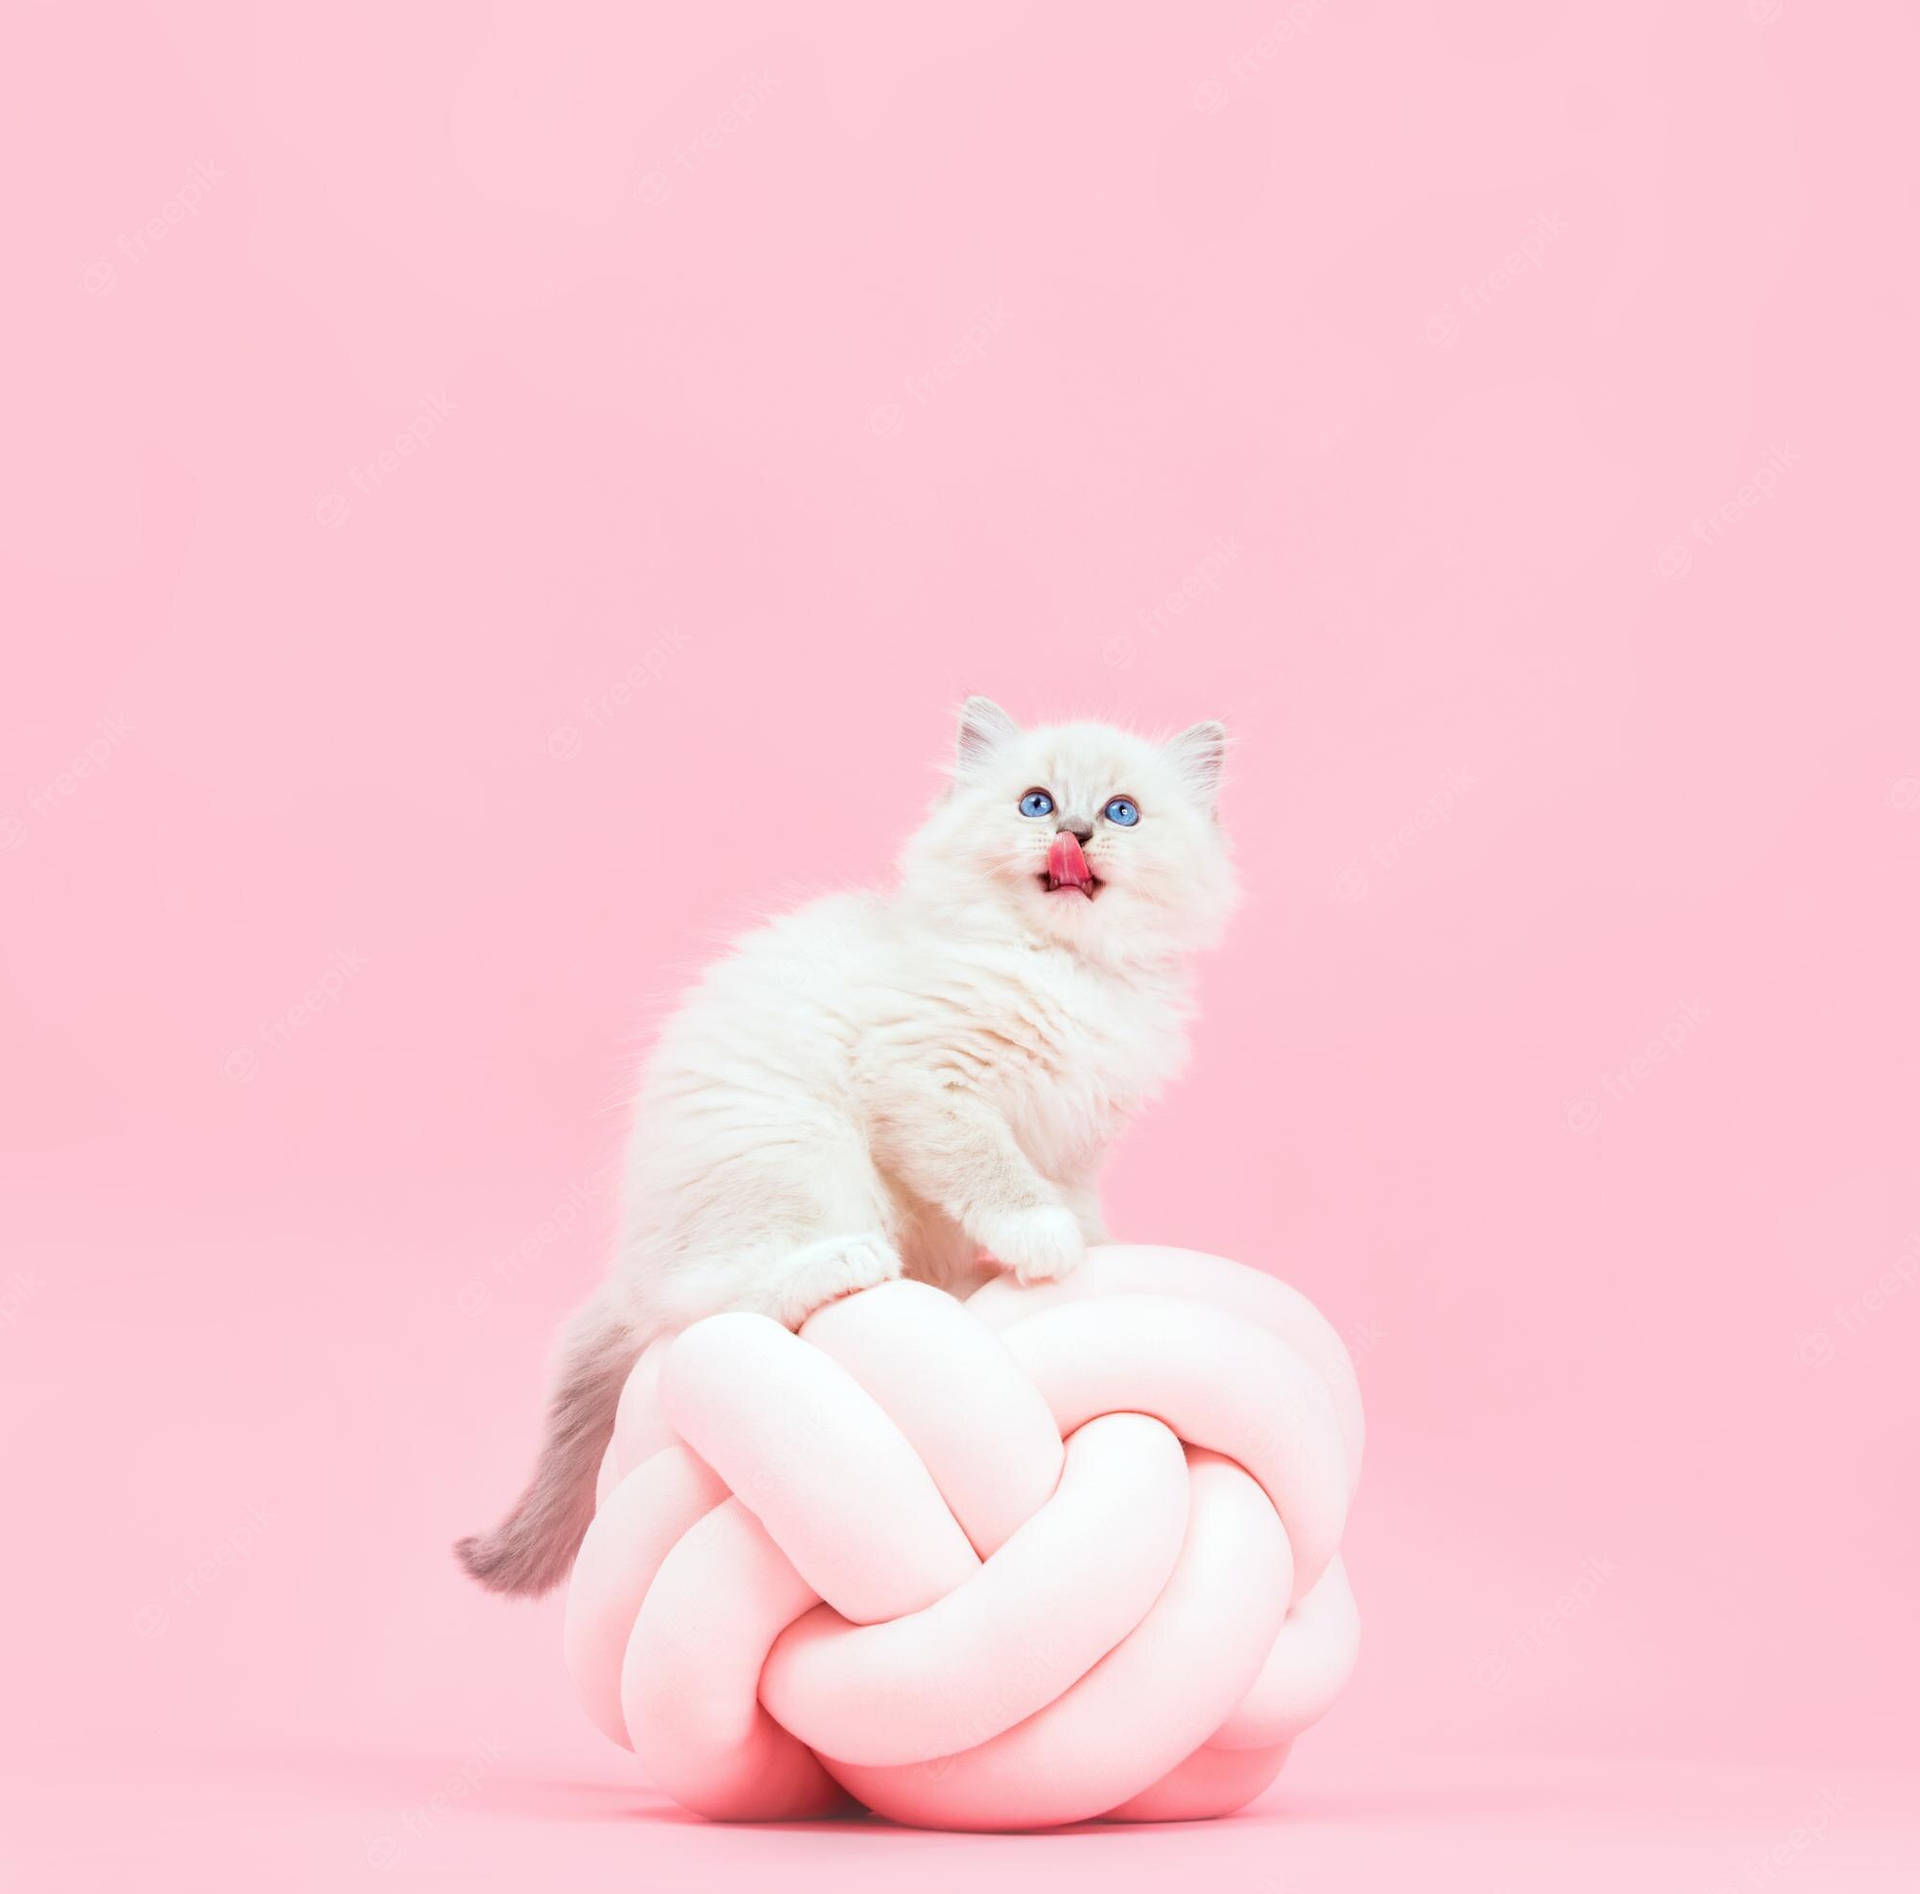 Einweißes Kätzchen Sitzt Auf Einem Pinken Ball. Wallpaper